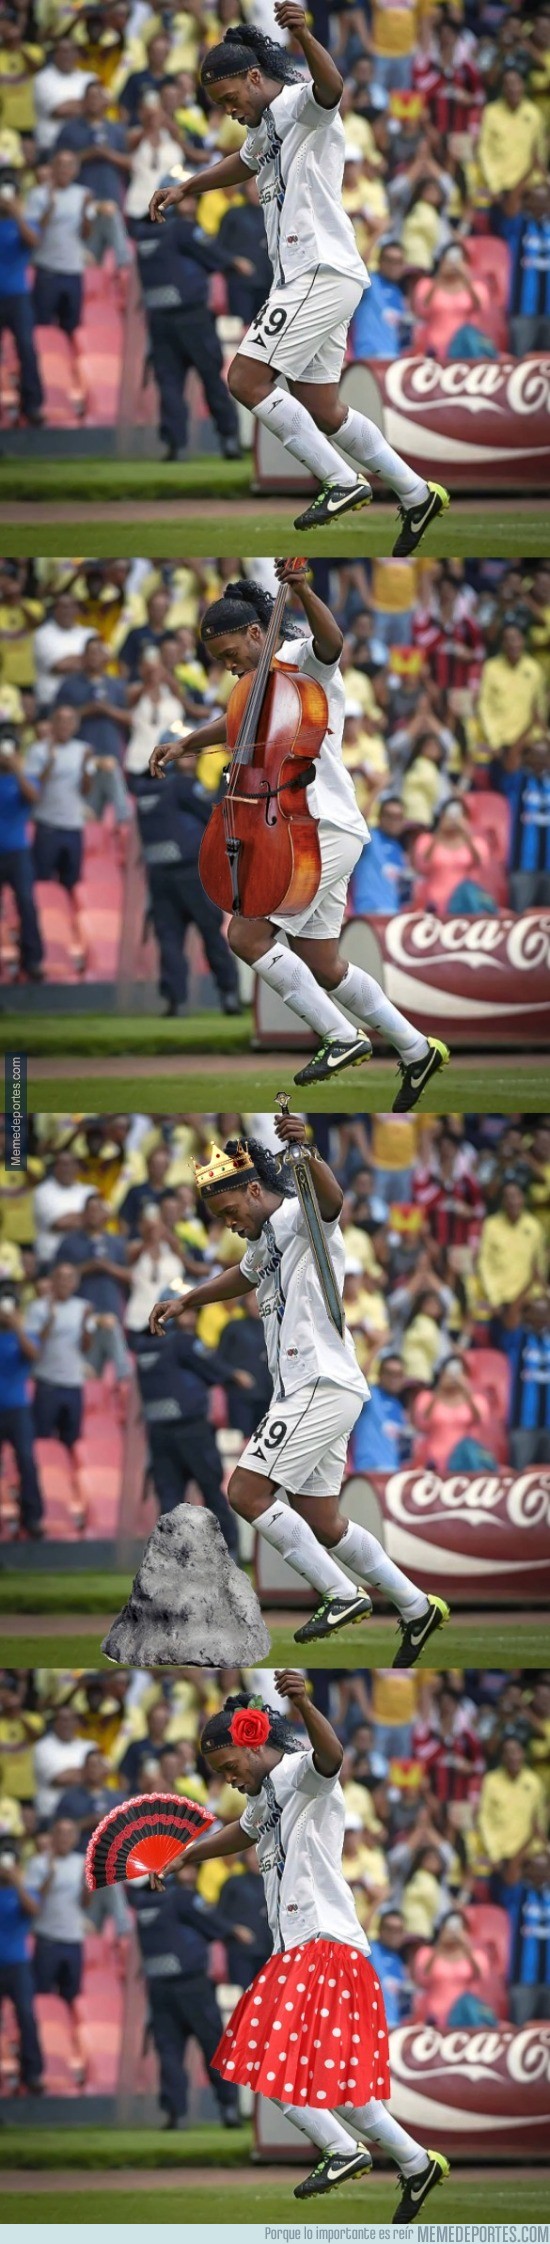 922198 - Ronda de chopitos de Ronaldinho